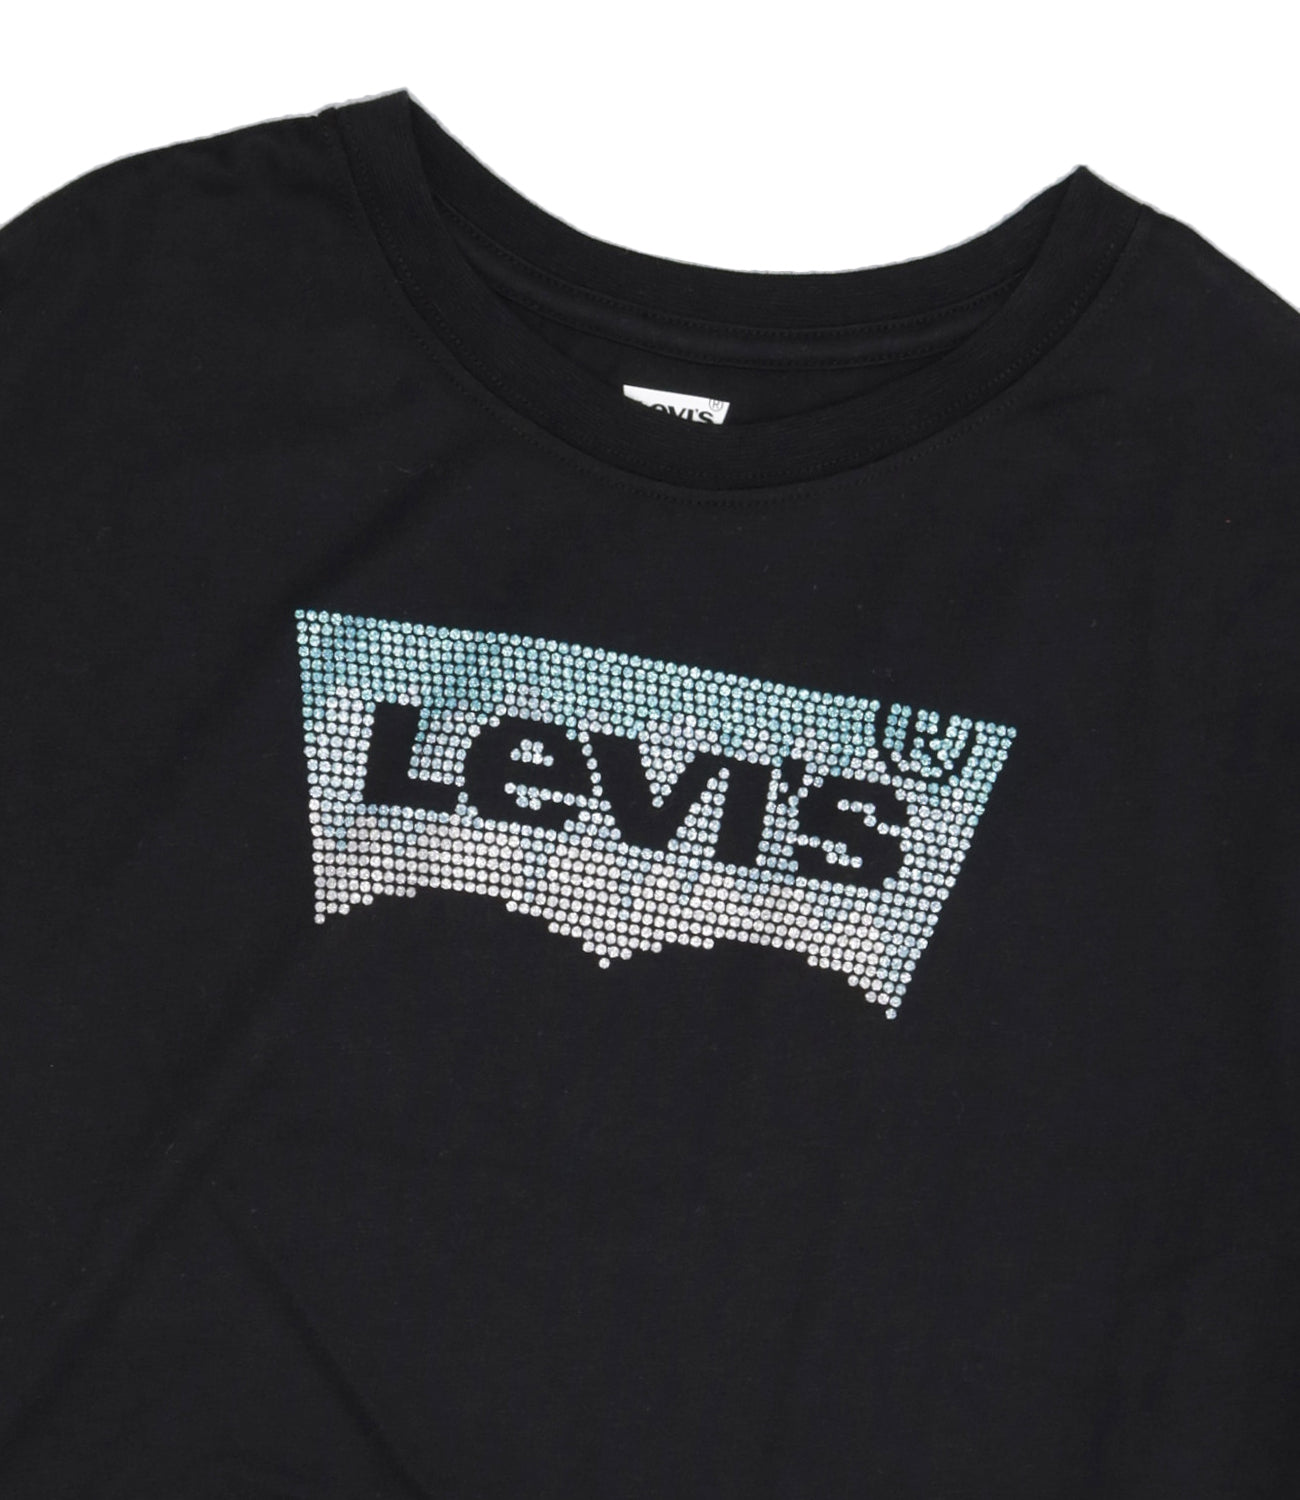 Levis Kids |T-Shirt Meet And Greet Glitter Bat Black